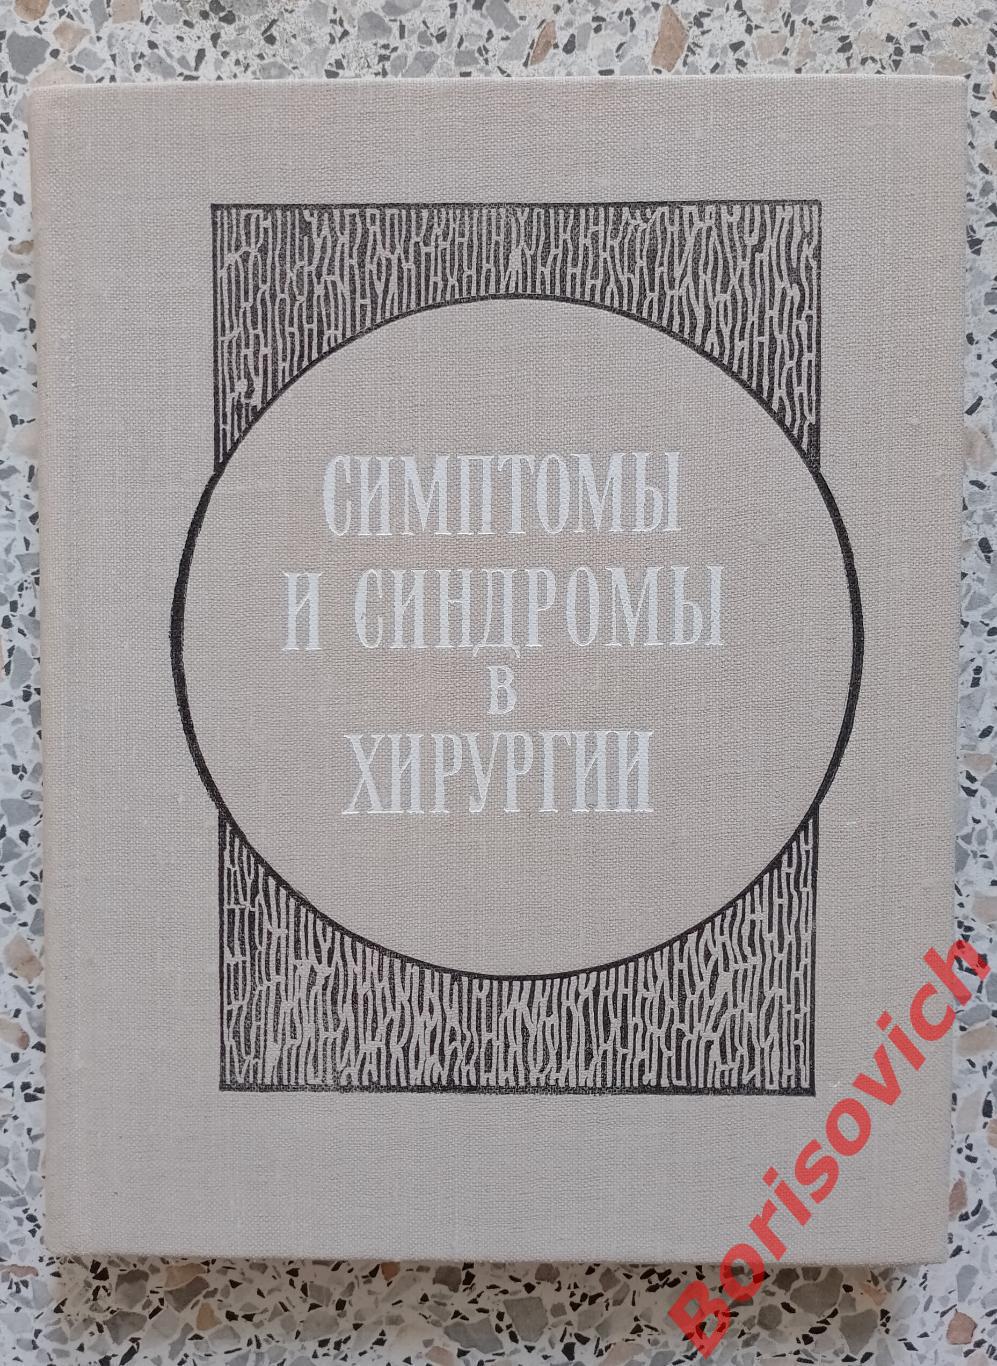 Симптомы и синдромы в хирургии Киев 1975 г 190 страниц